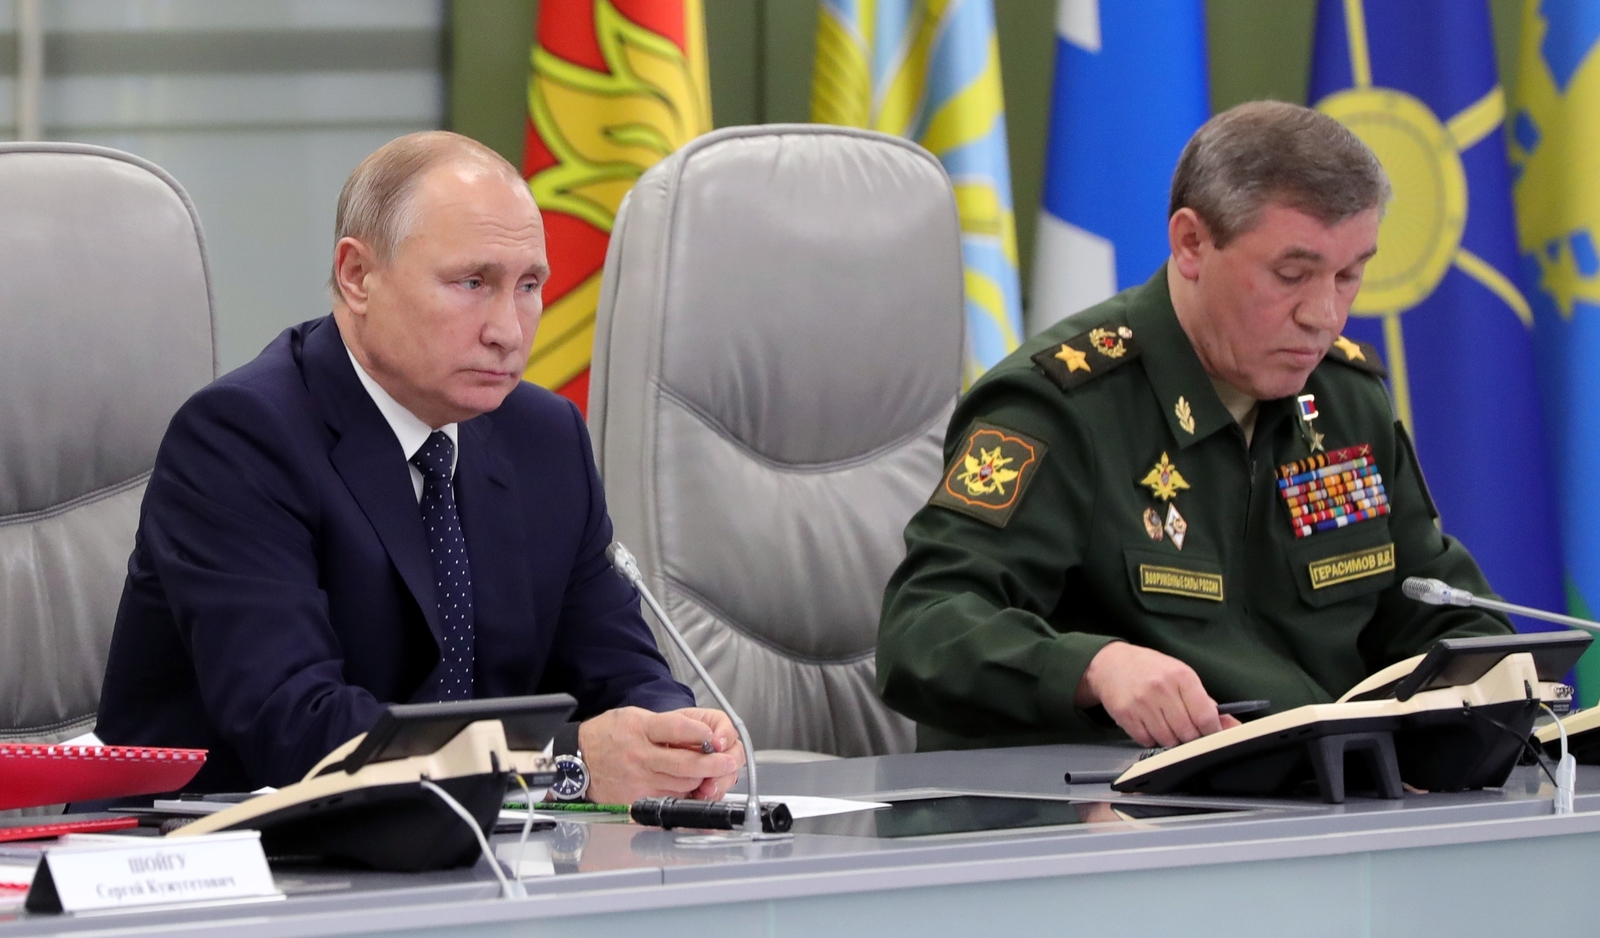 Estrategia. El presidente ruso Vladimir Putin (Izq.) presidió el ensayo del Avangard desde el Centro Nacional de Mando. (AP)